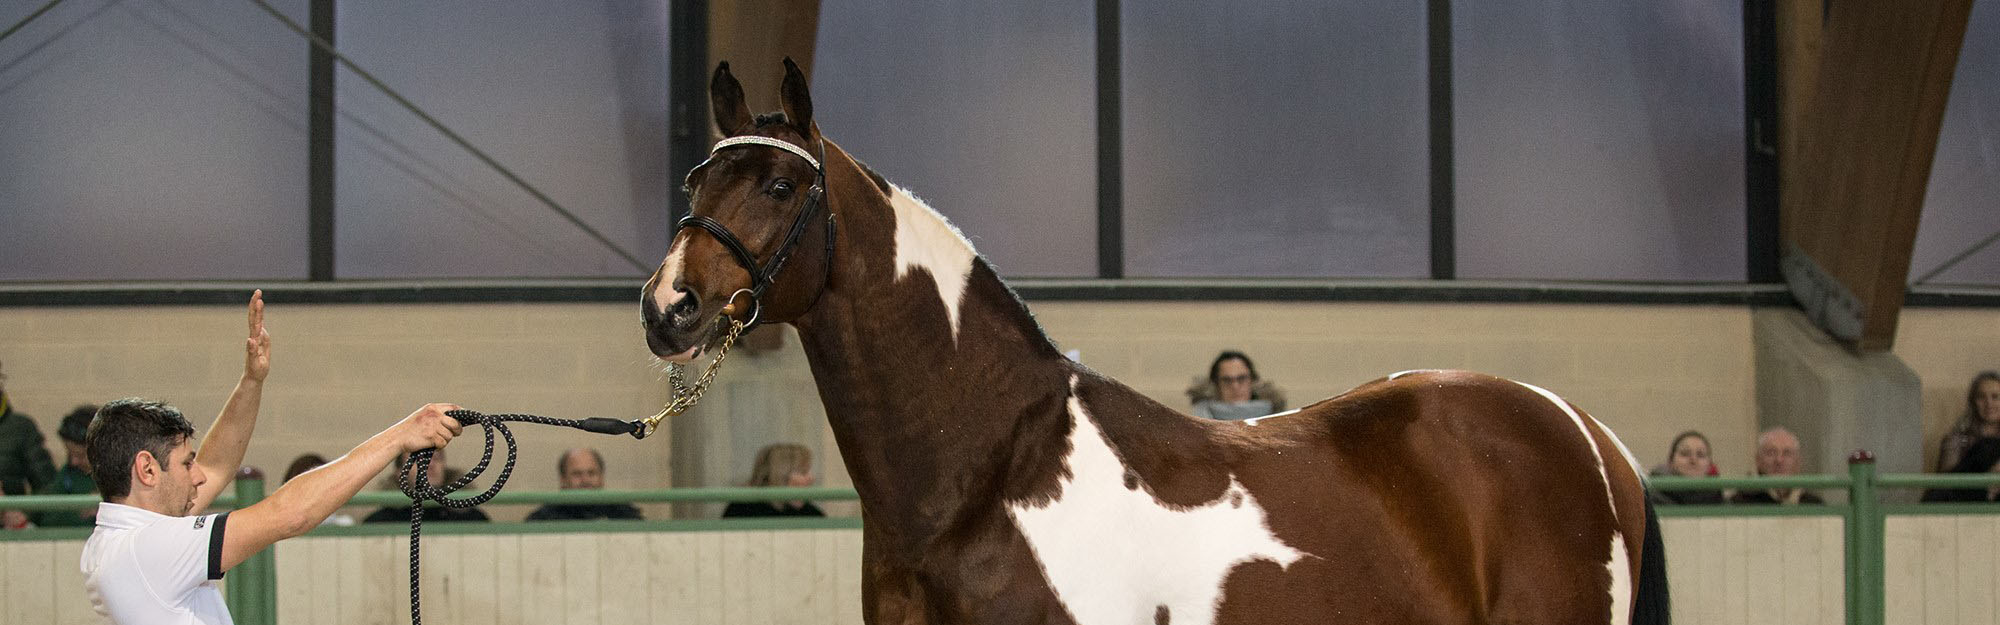 Utah Van Erpekom Best Colored Stallion in the World Biancospino Italy  